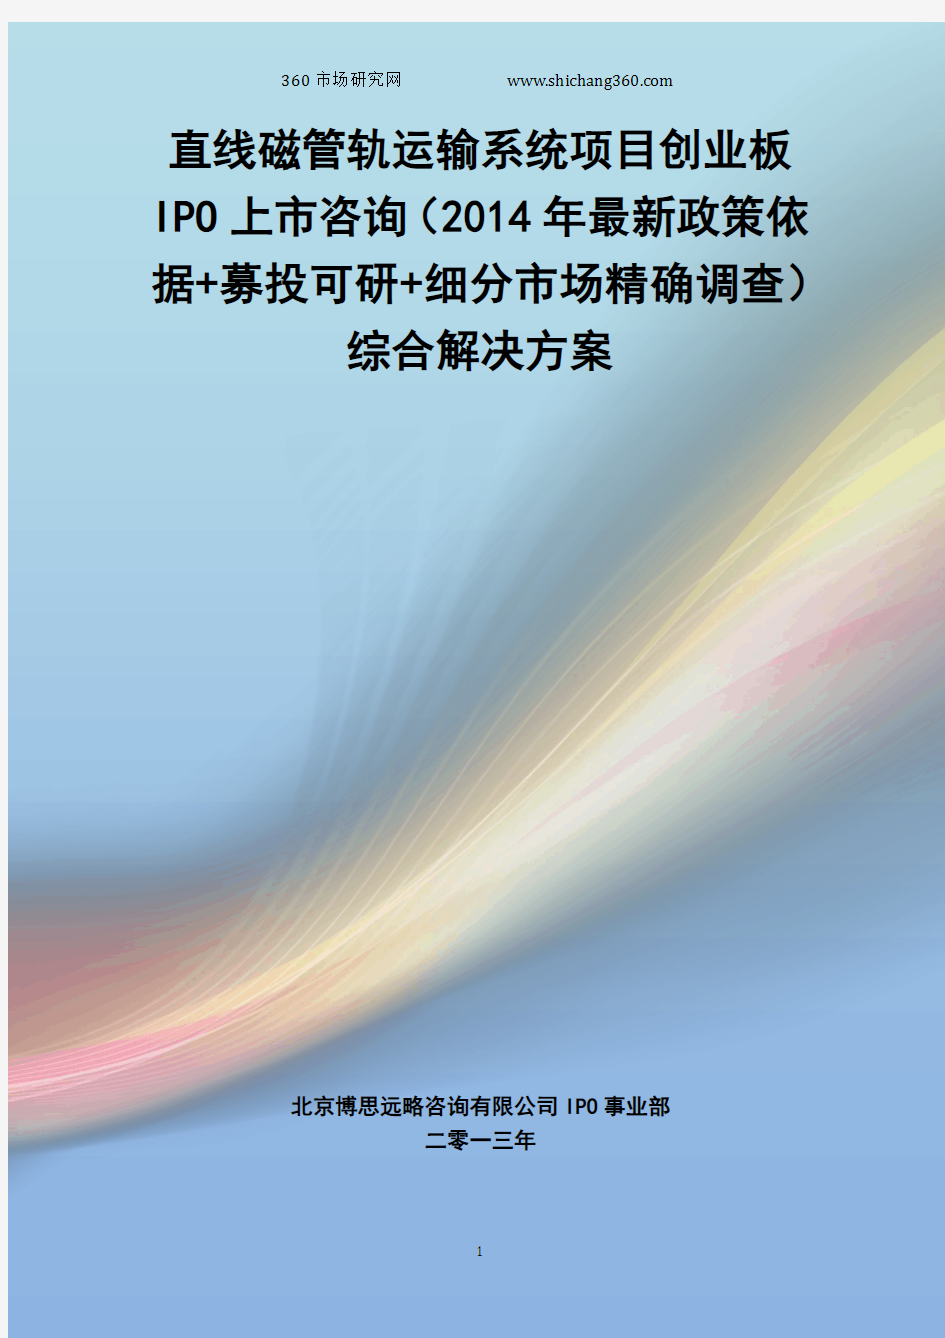 直线磁管轨运输系统IPO上市咨询(2014年最新政策+募投可研+细分市场调查)综合解决方案